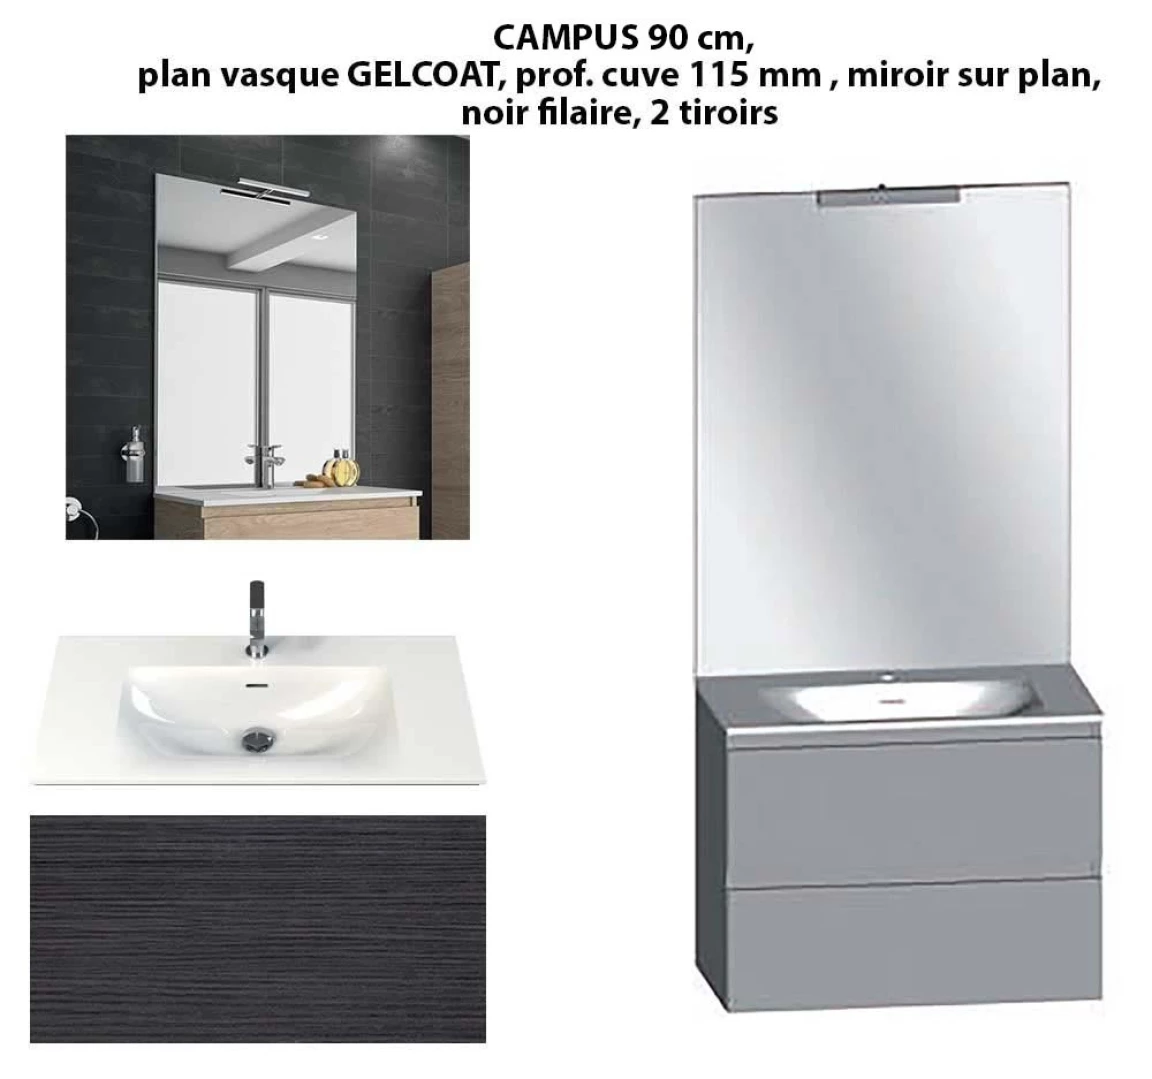 Ensemble meuble de salle de bain CAMPUS 90 cm, plan vasque GELCOAT, prof. cuve 115 mm, miroir sur plan, noir filaire, 2 tiroirs